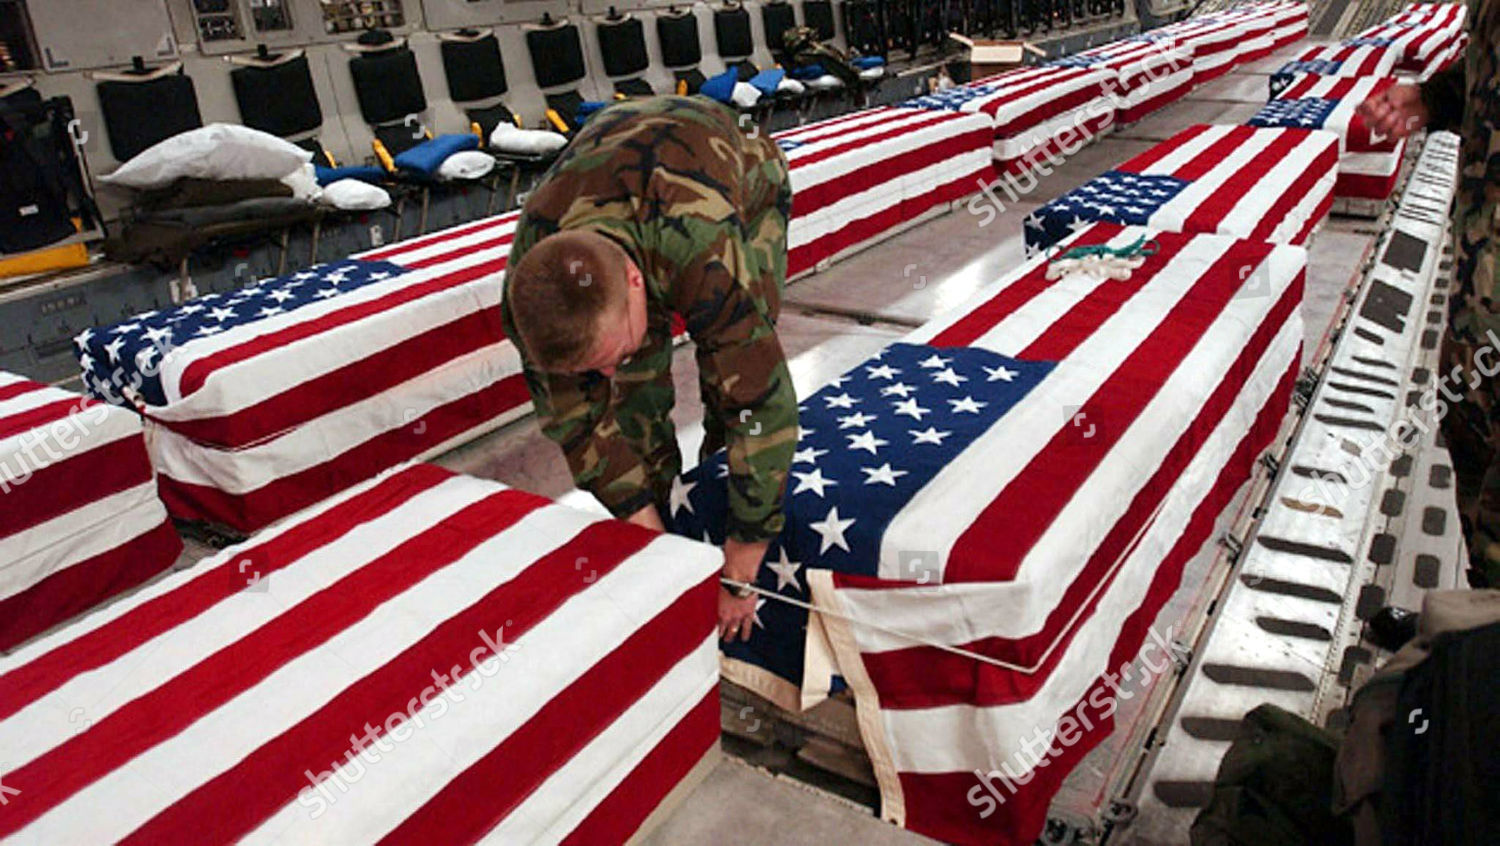 американские солдаты погибшие в ираке